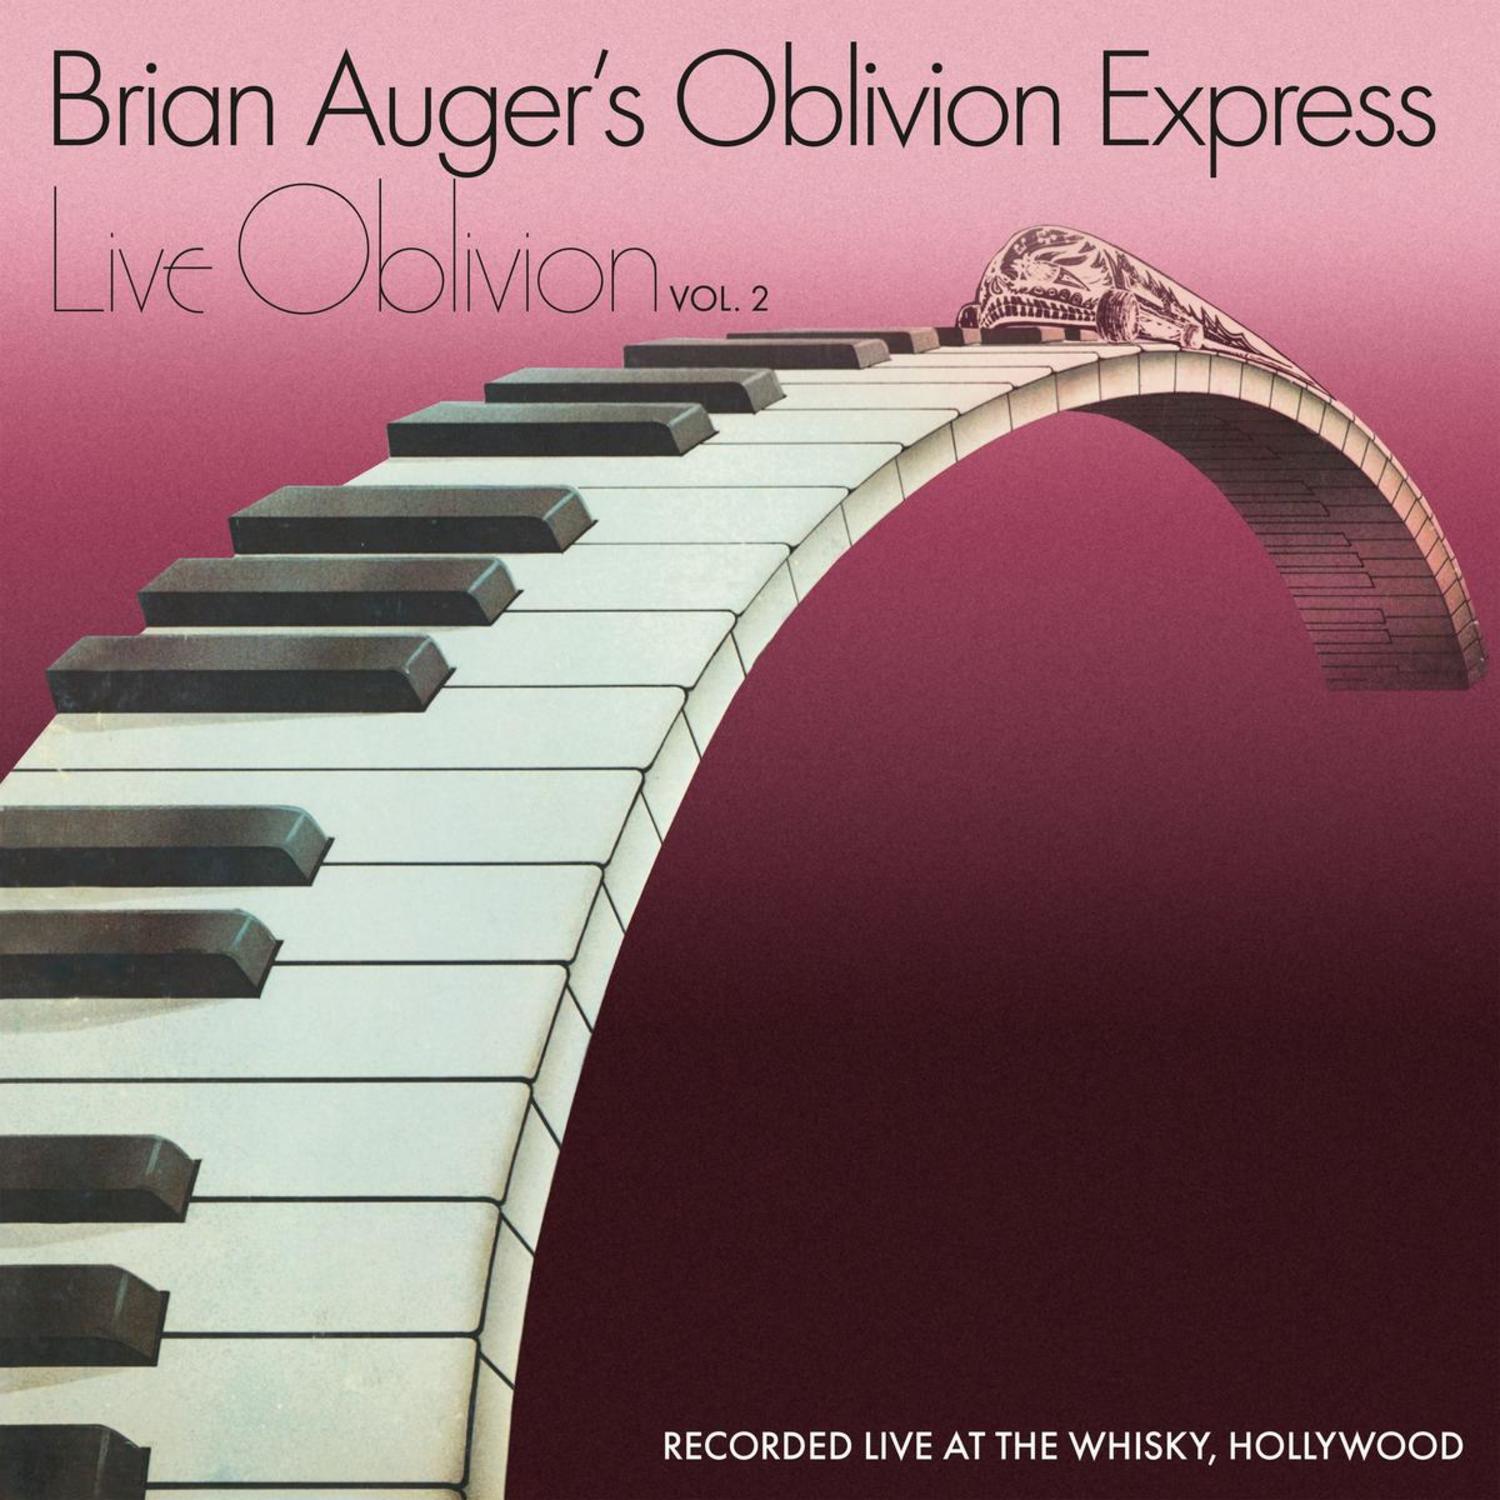 Brian Auger / Oblivion Express - LIVE OBLIVION 2 